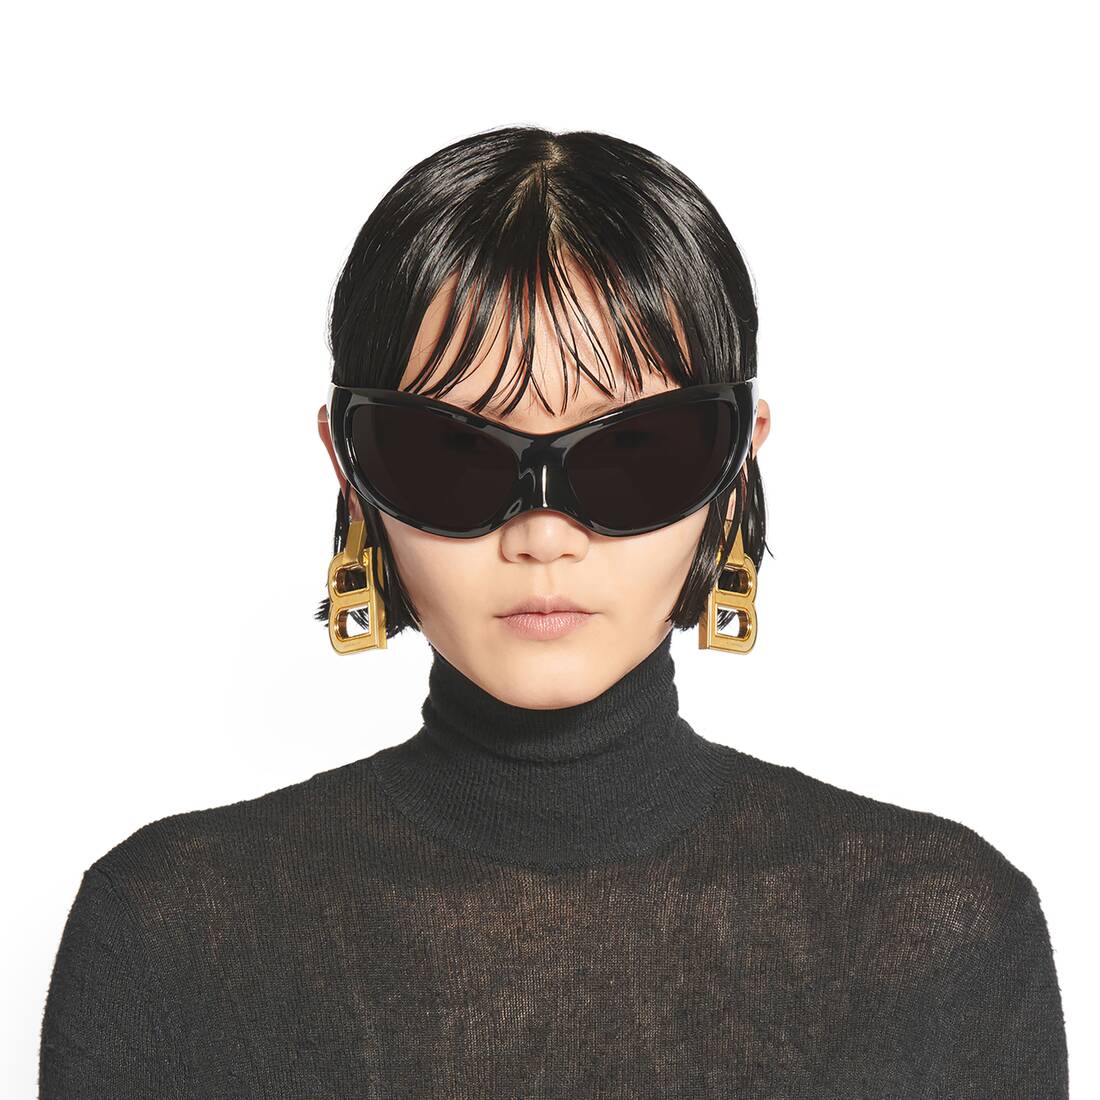 Balenciaga cateye sunglasses キャットアイサングラス試着のみの美品になります